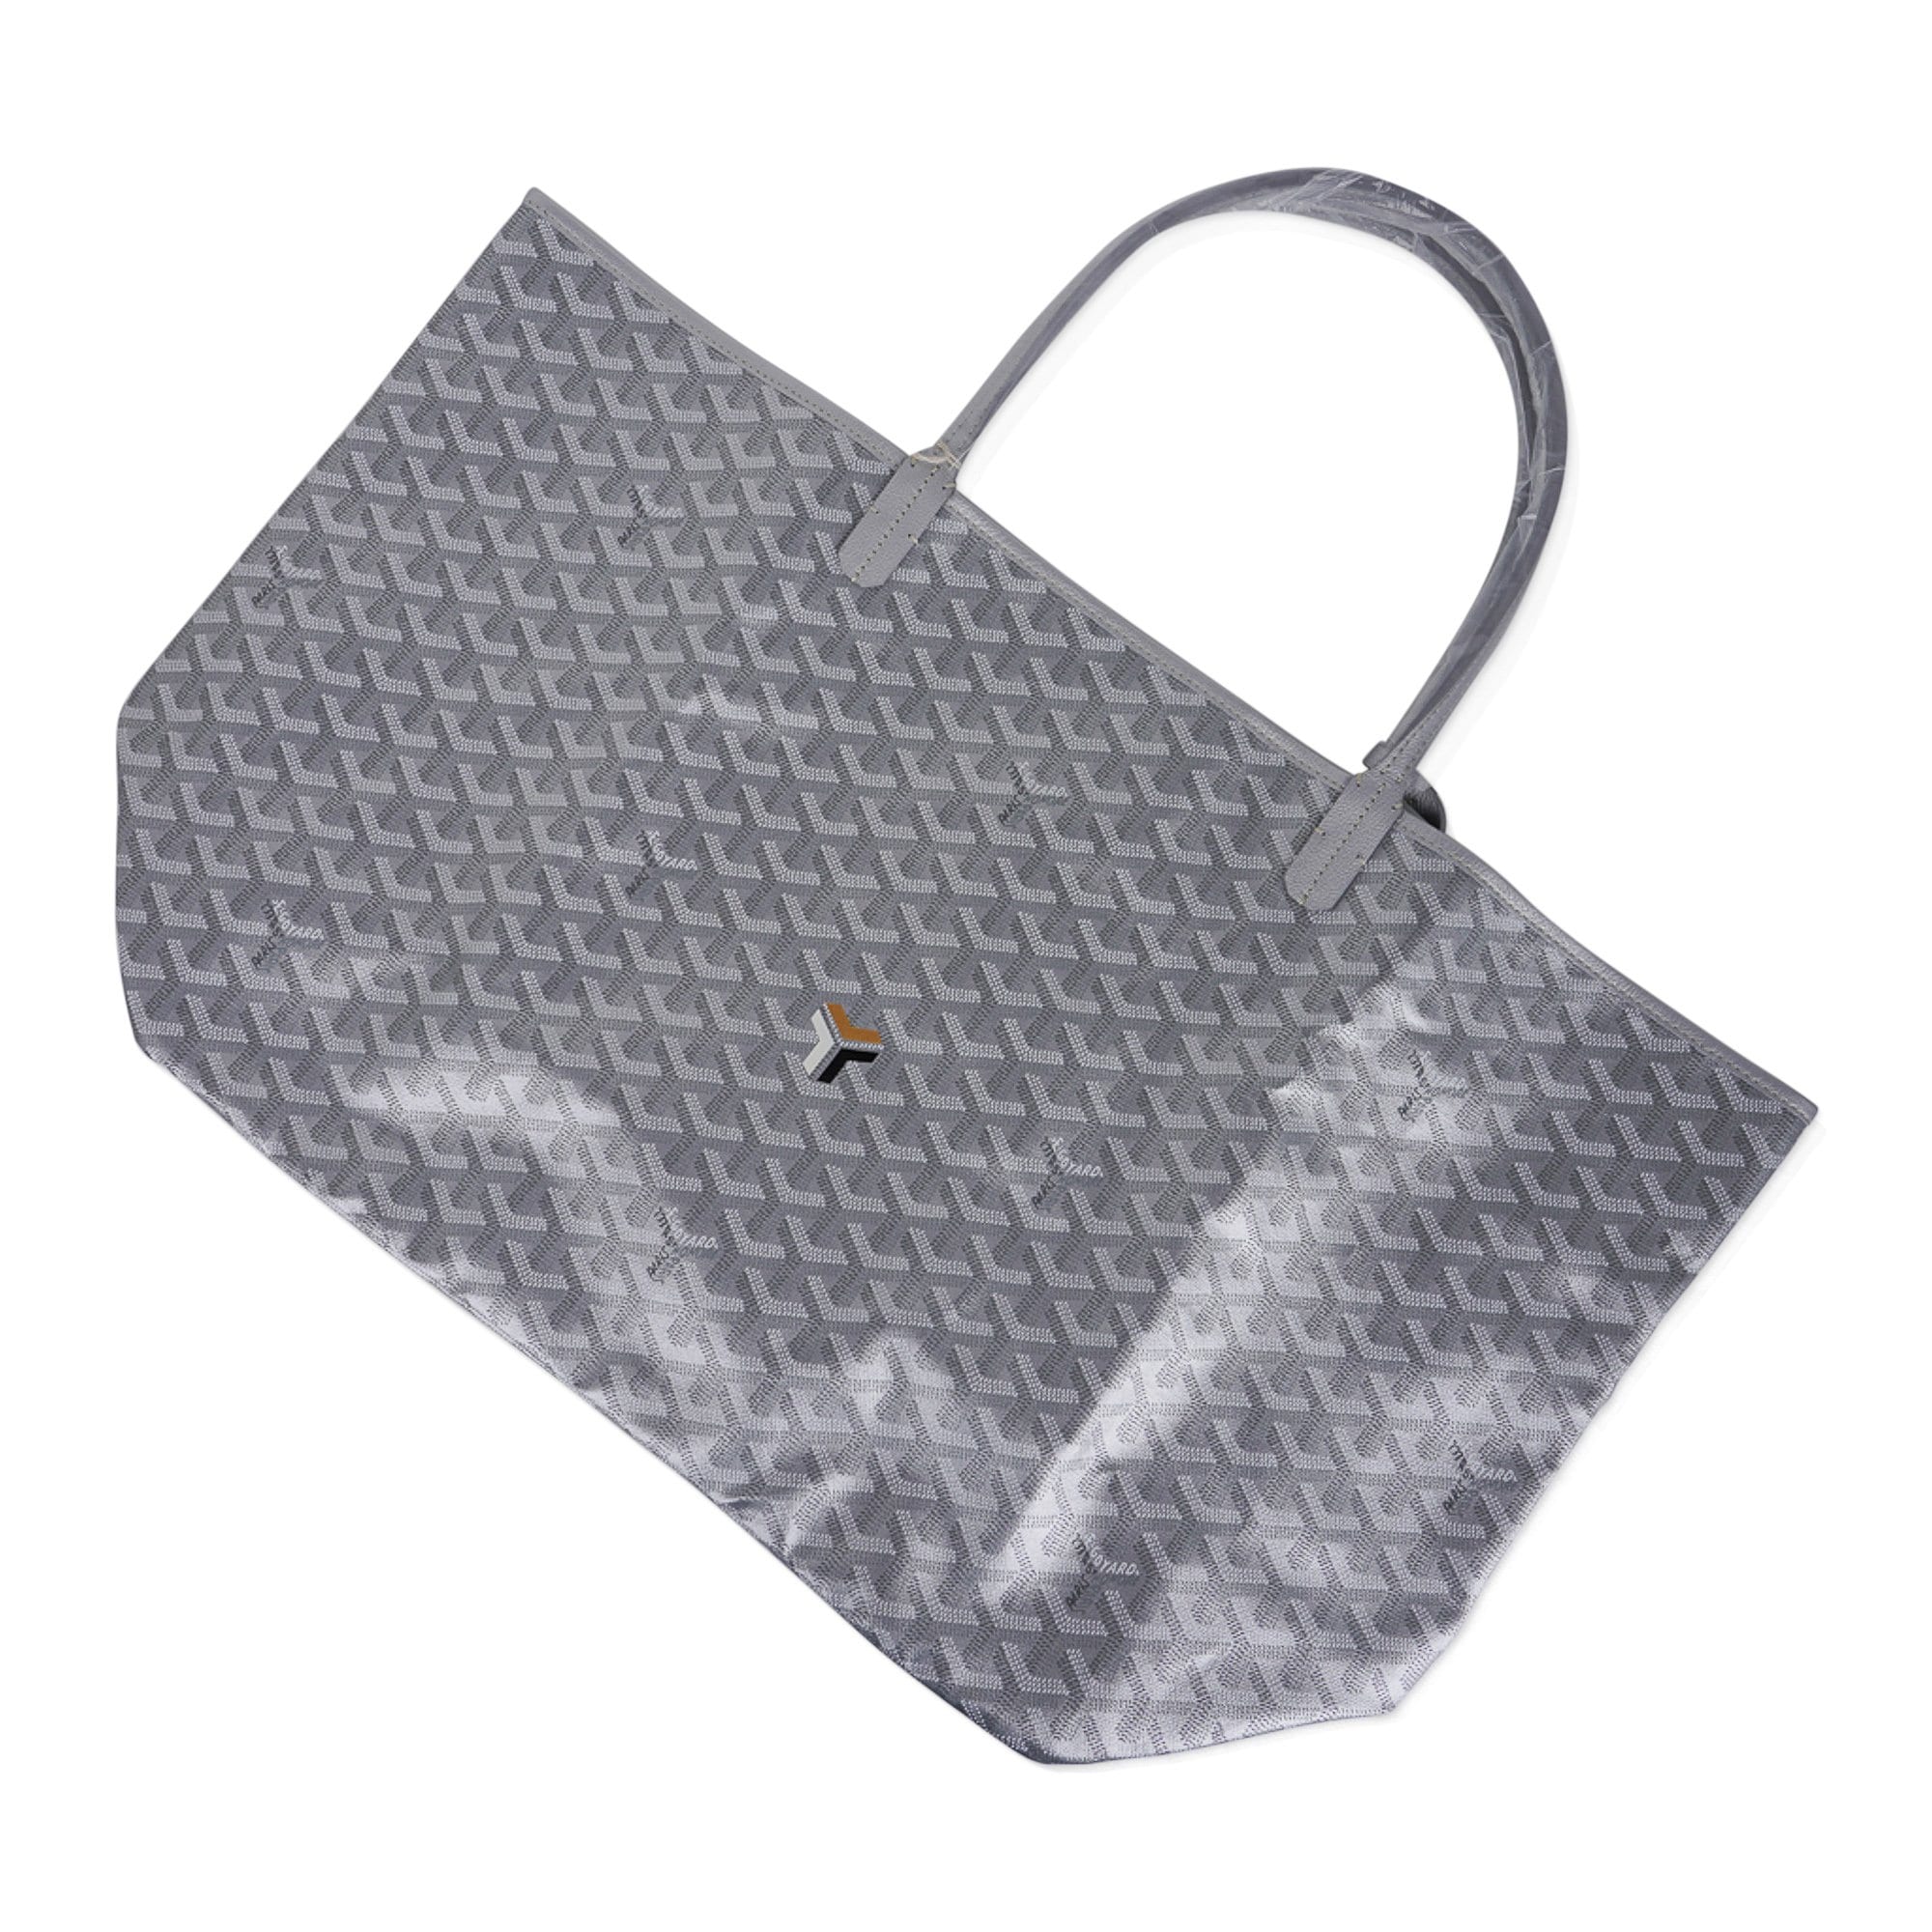 Saint Louis Goyard Saint-Louis PM shopping bag in gray Goyard